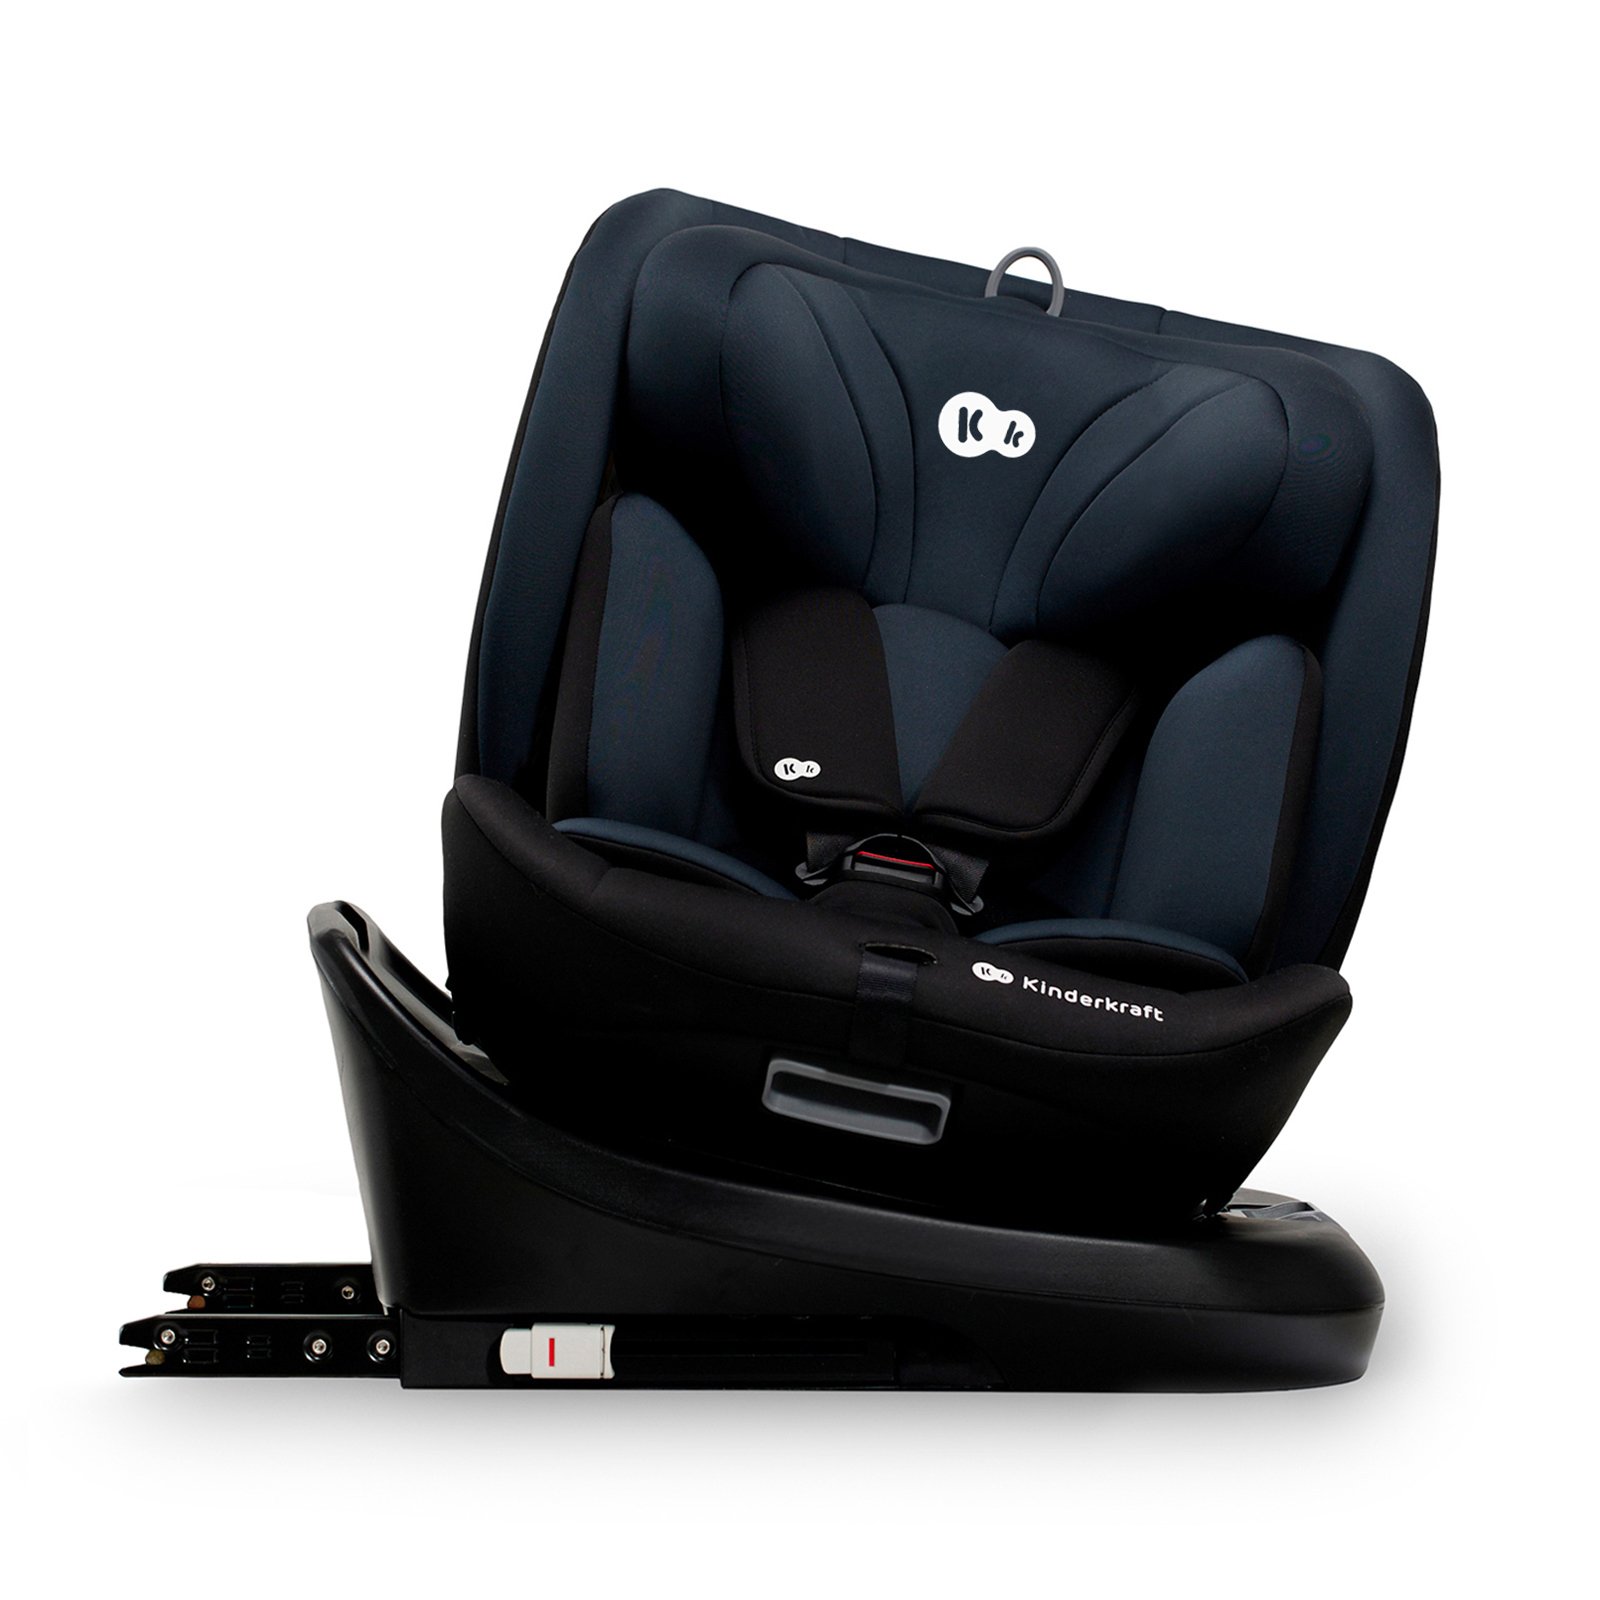 Βρεφικό-Παιδικό κάθισμα αυτοκινήτου i-Grow black